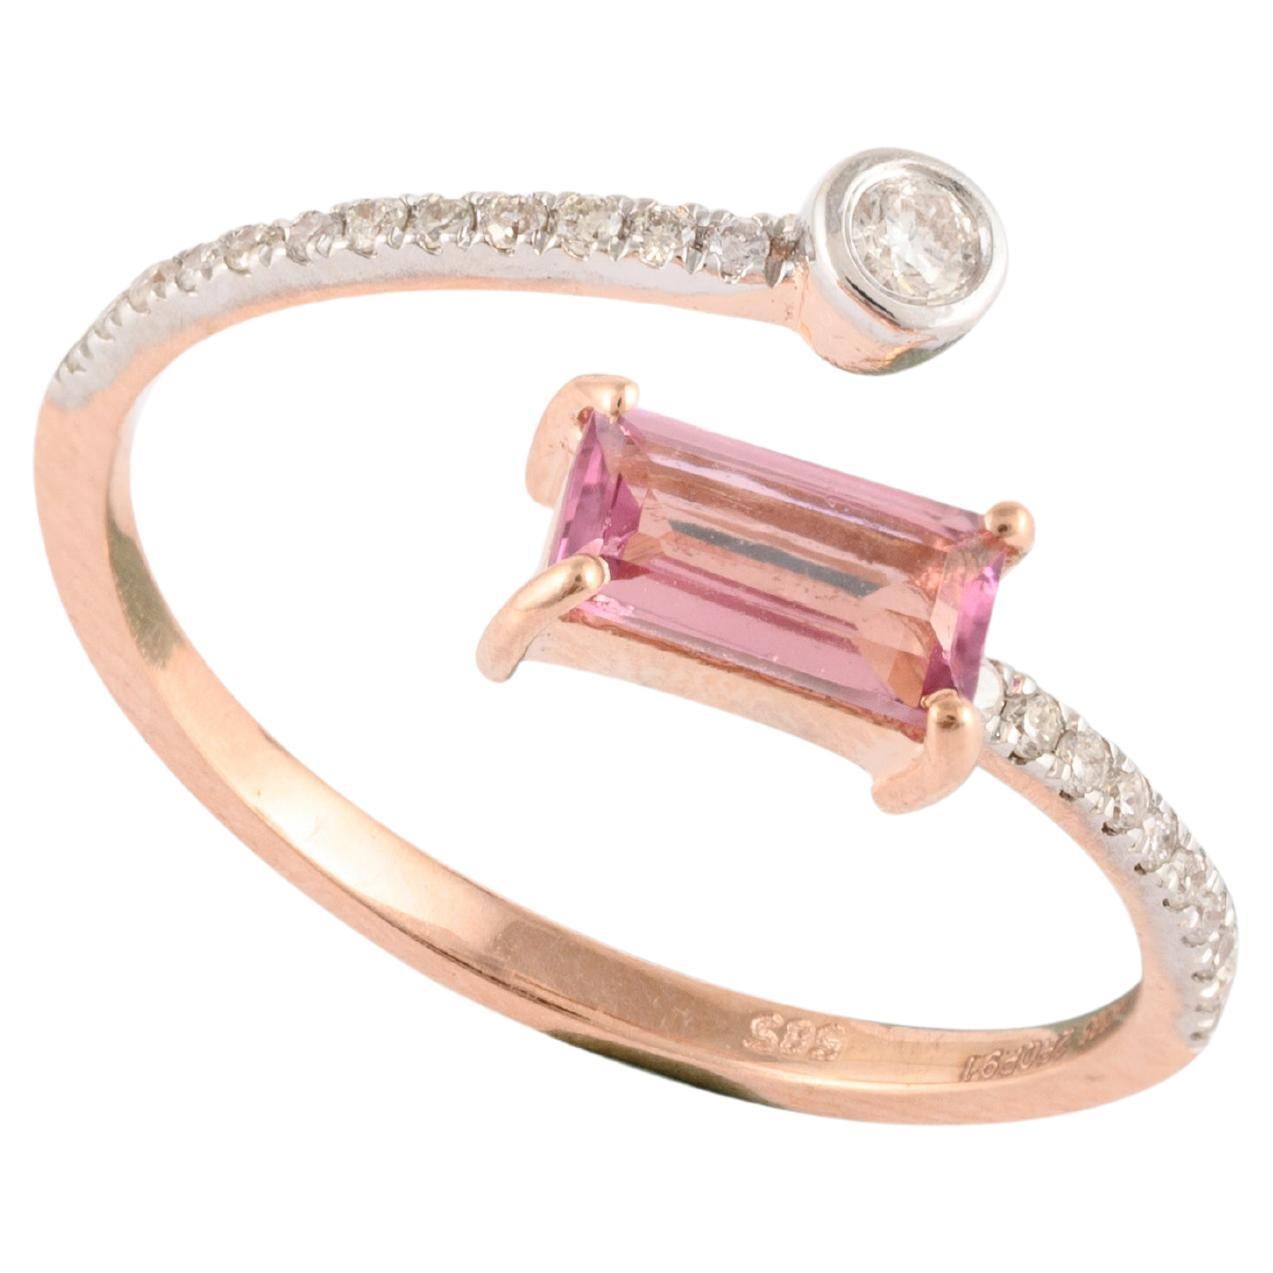 En vente :  Bague porte-monnaie en or rose massif 14 carats avec diamants et tourmaline rose taille baguette